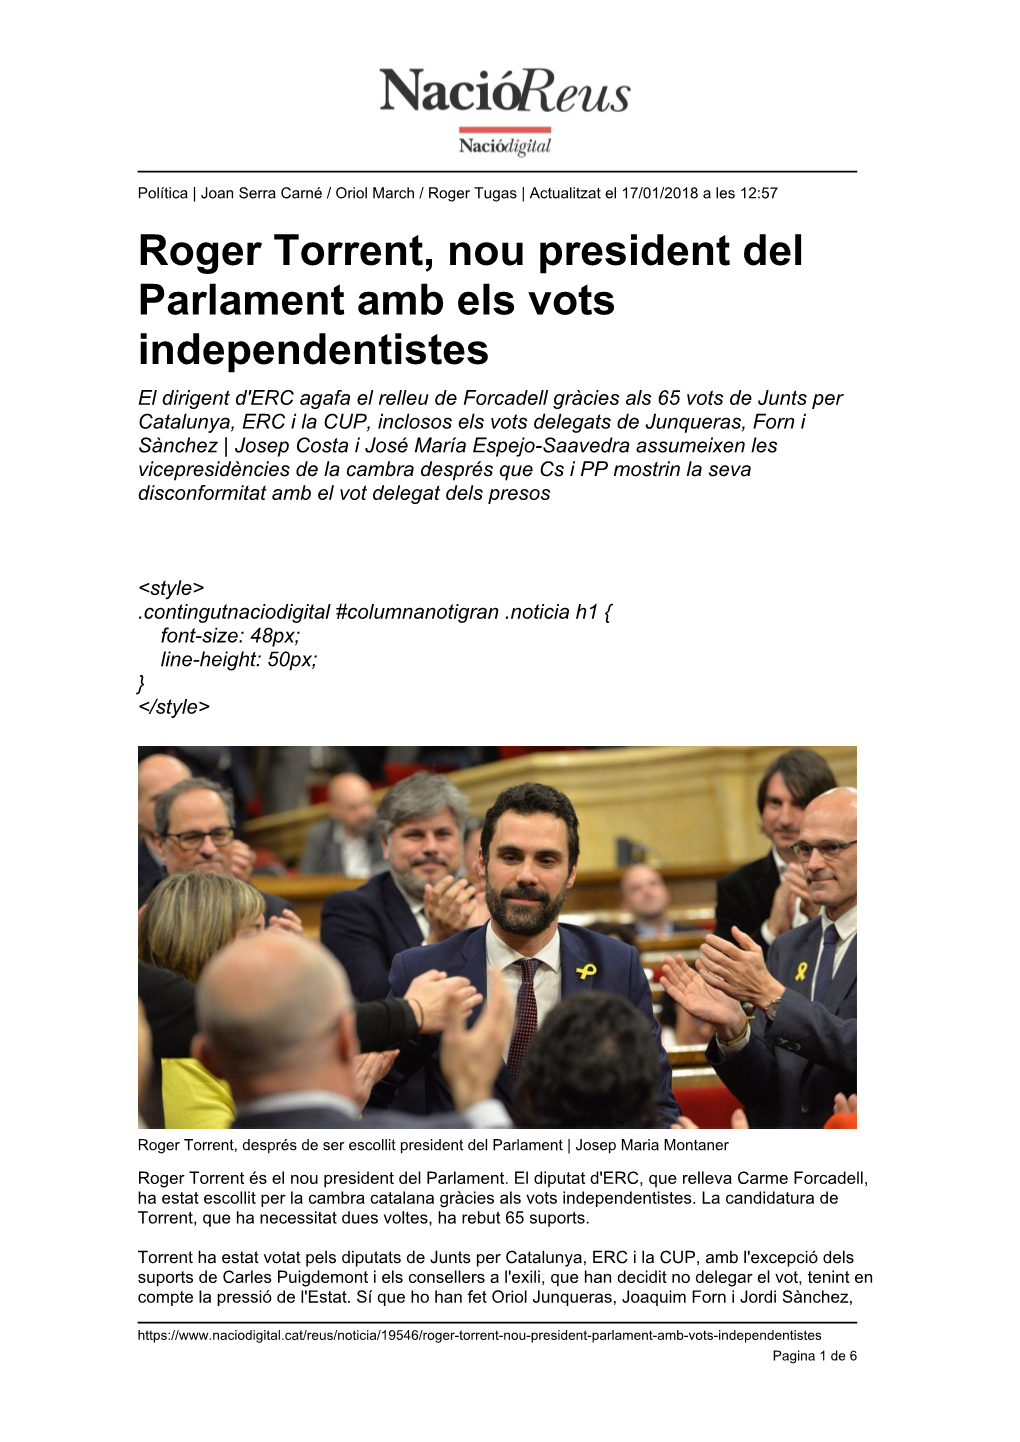 Roger Torrent, Nou President Del Parlament Amb Els